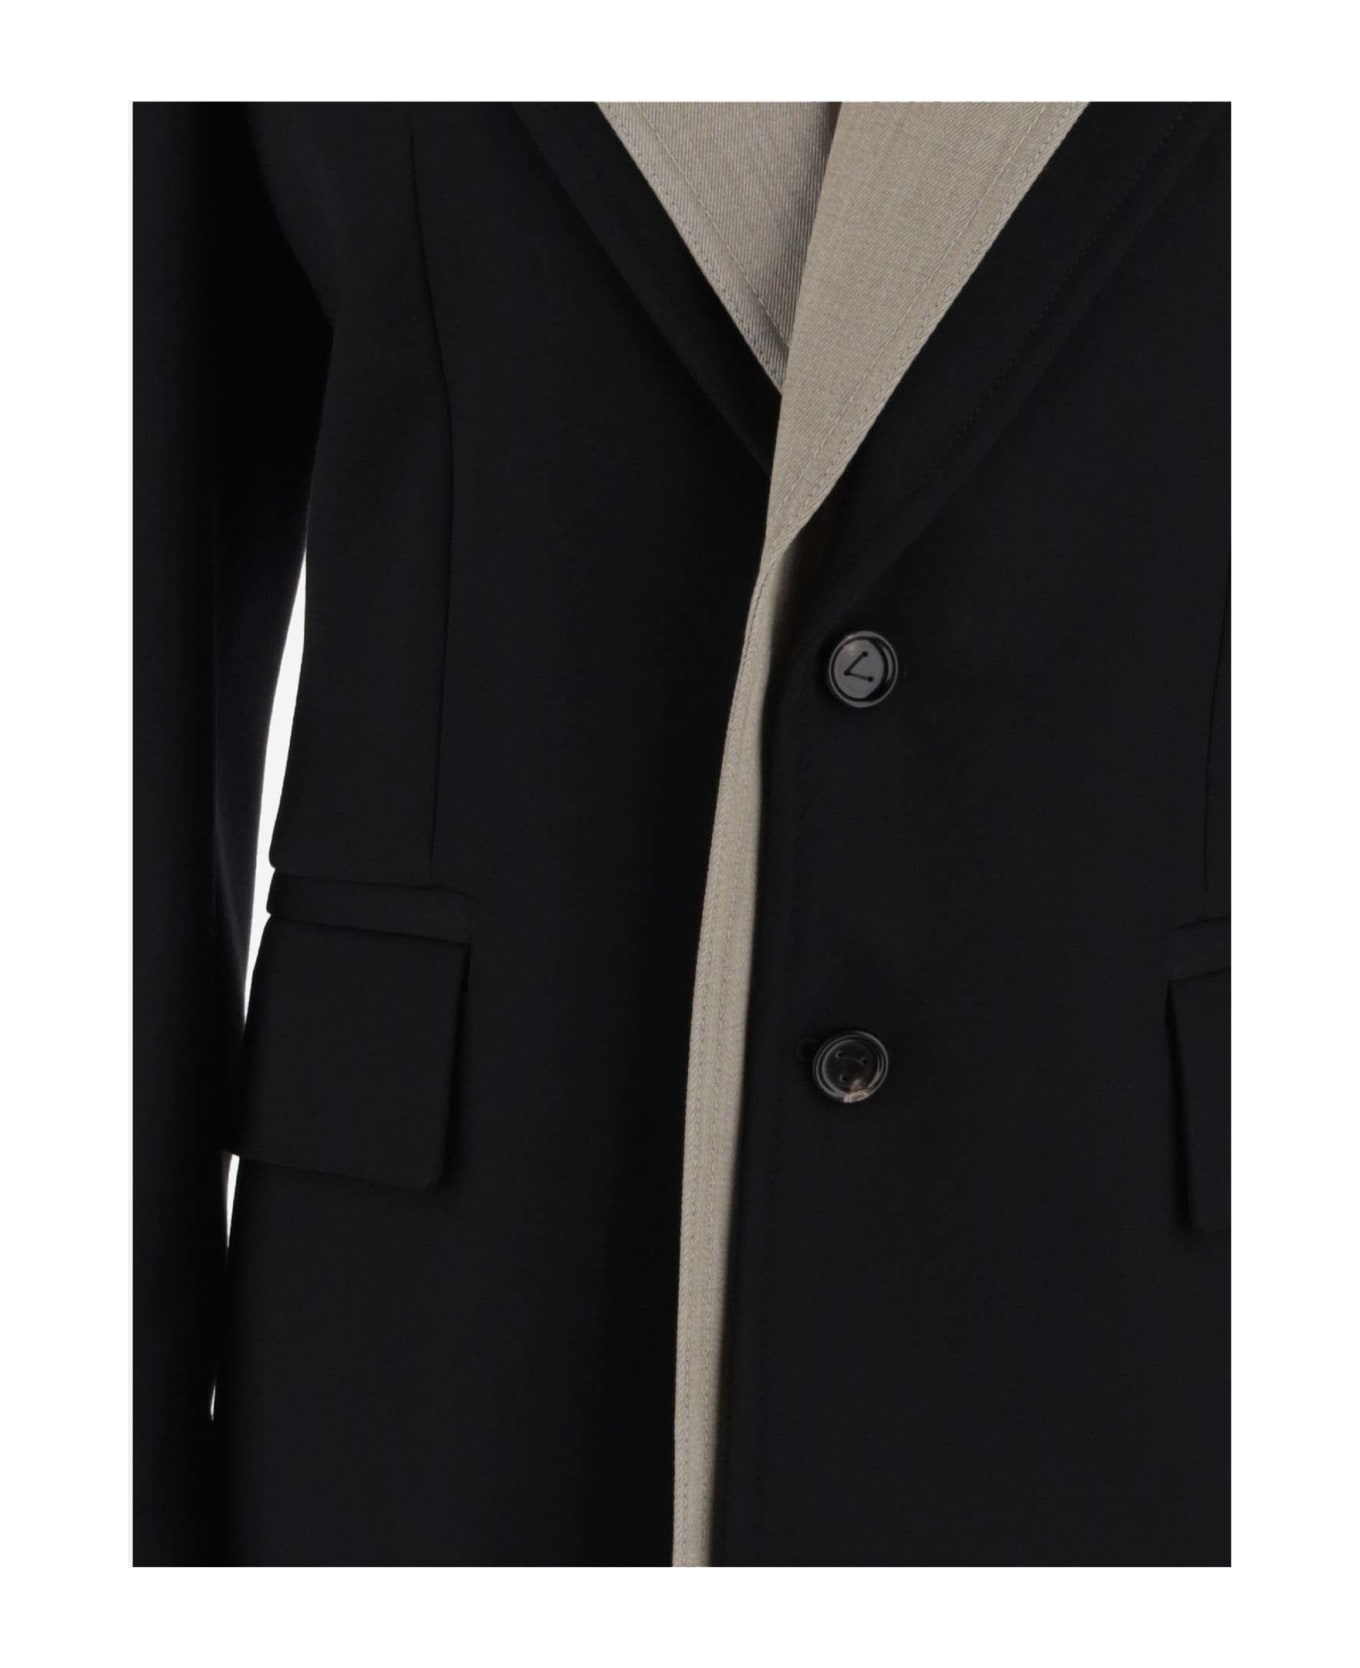 Bottega Veneta Curved Sleeved Jacket - Black コート